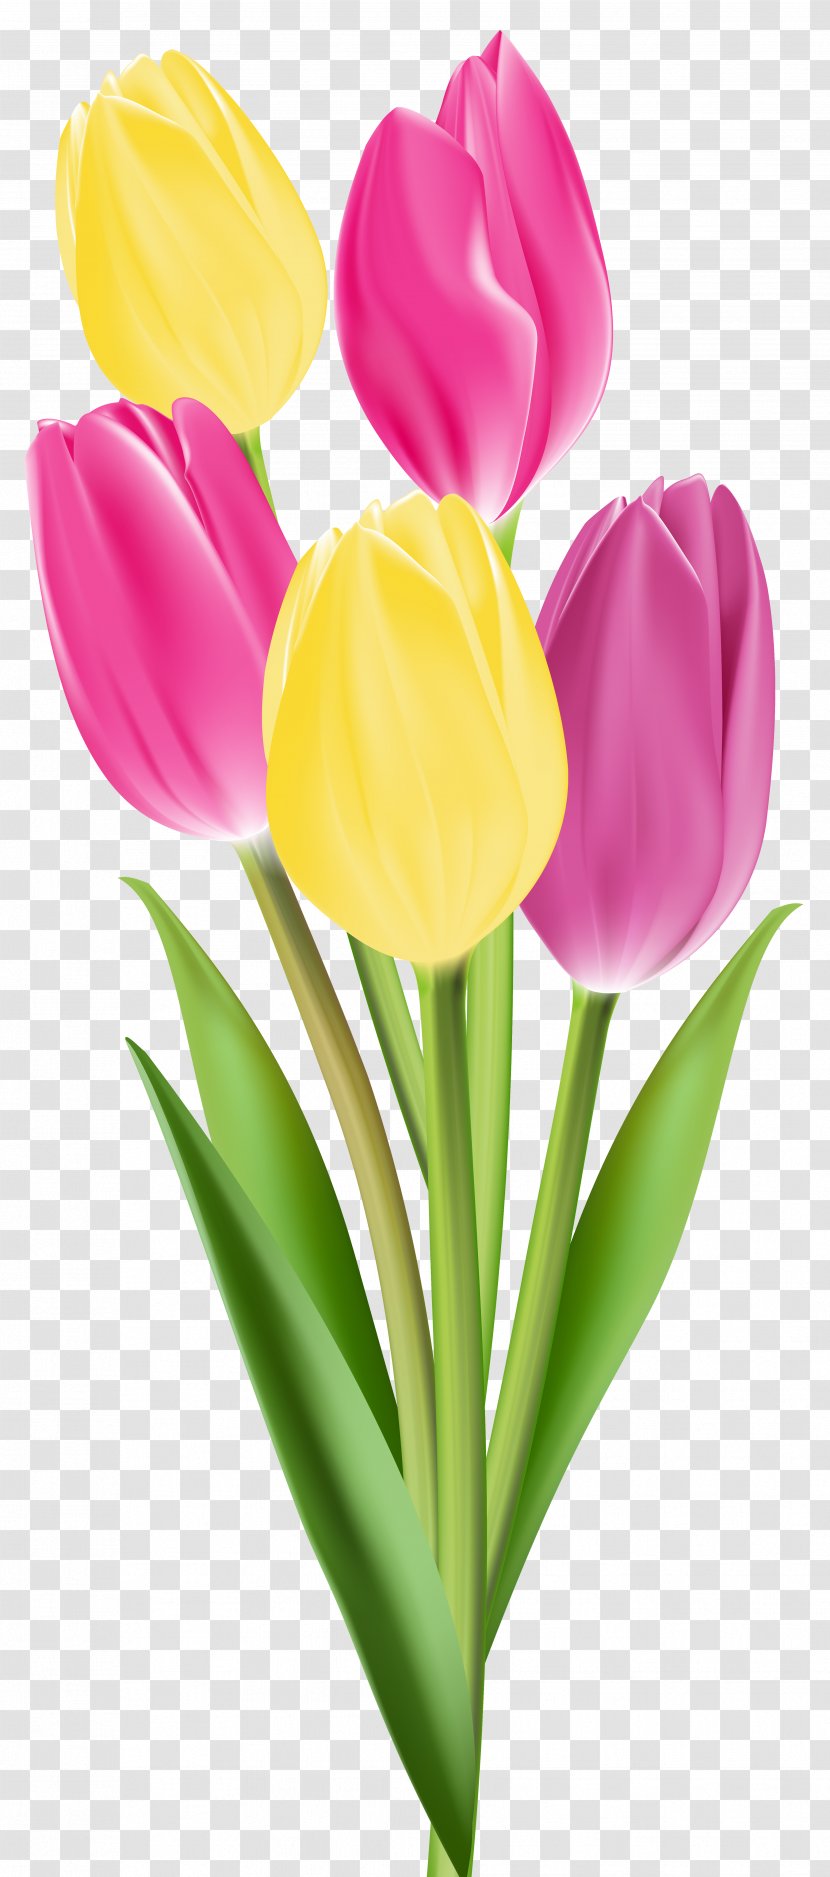 Tulip Flower Bouquet Clip Art - Seed Plant Transparent PNG